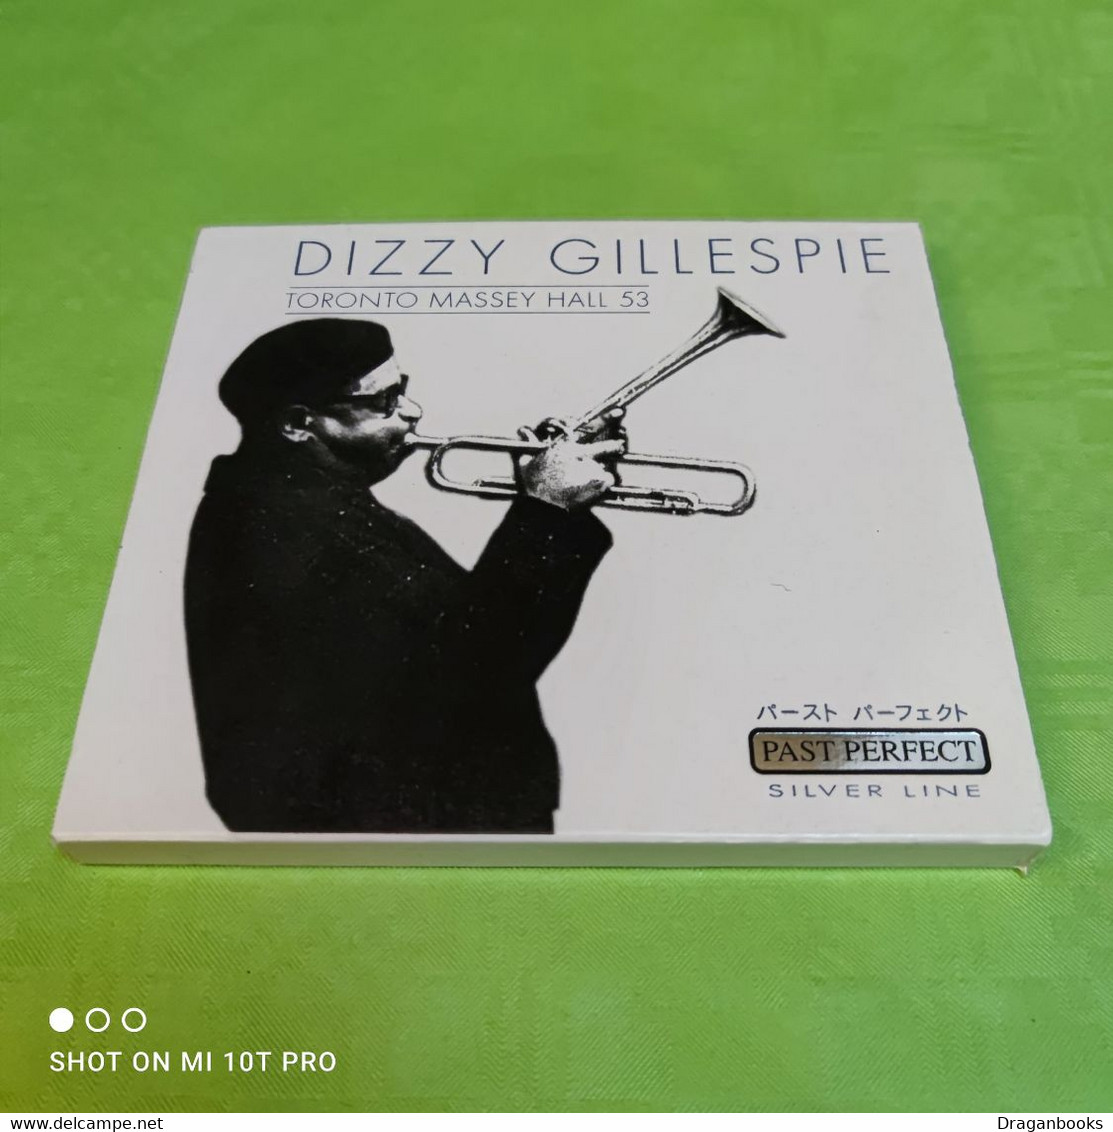 Dizzy Gillespie - Toronto Massey Hall 53 - Instrumental